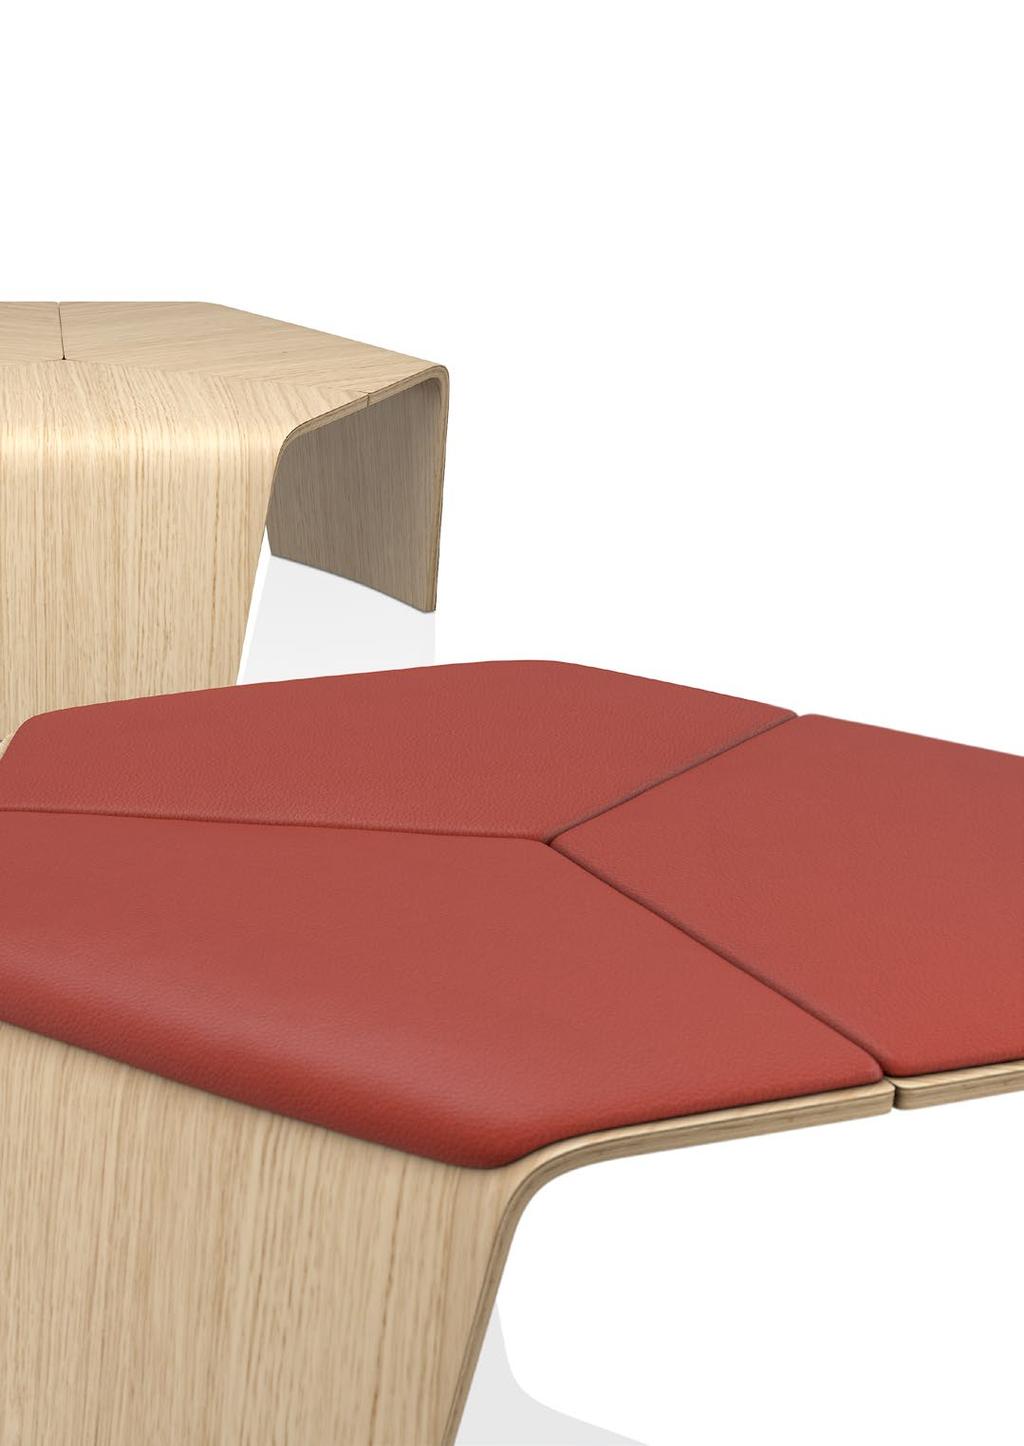 Solitär im Raum: Die Dimensionen und die klare hexagonale Form prädestinieren die Sitzelemente